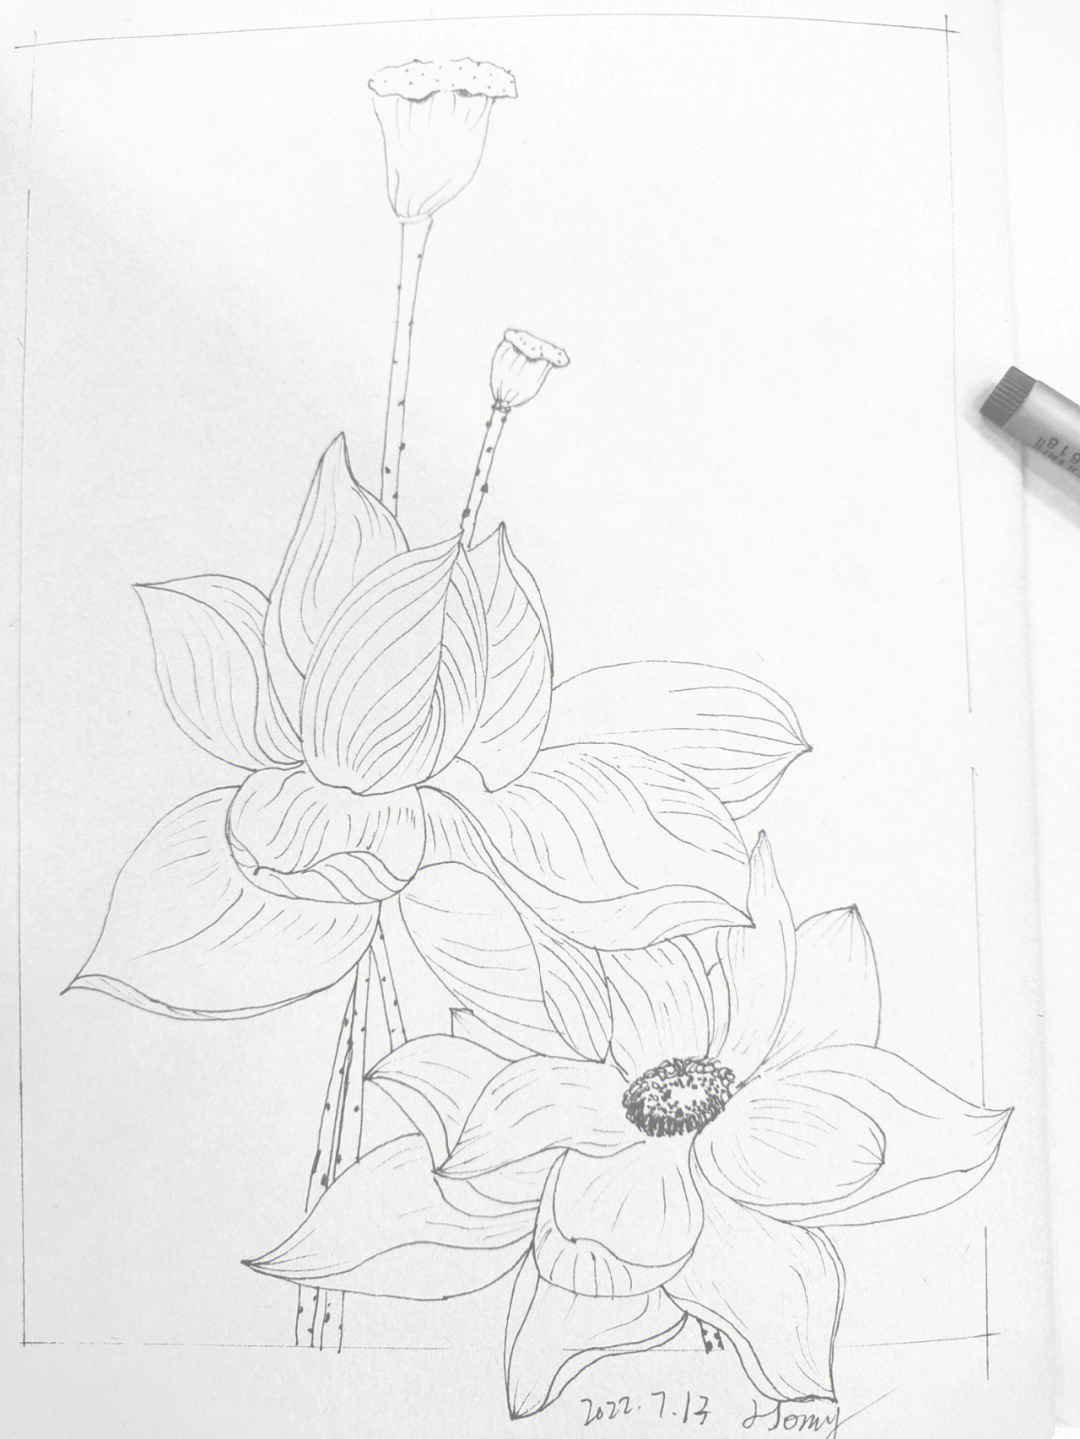 莲花铅笔画画法图片